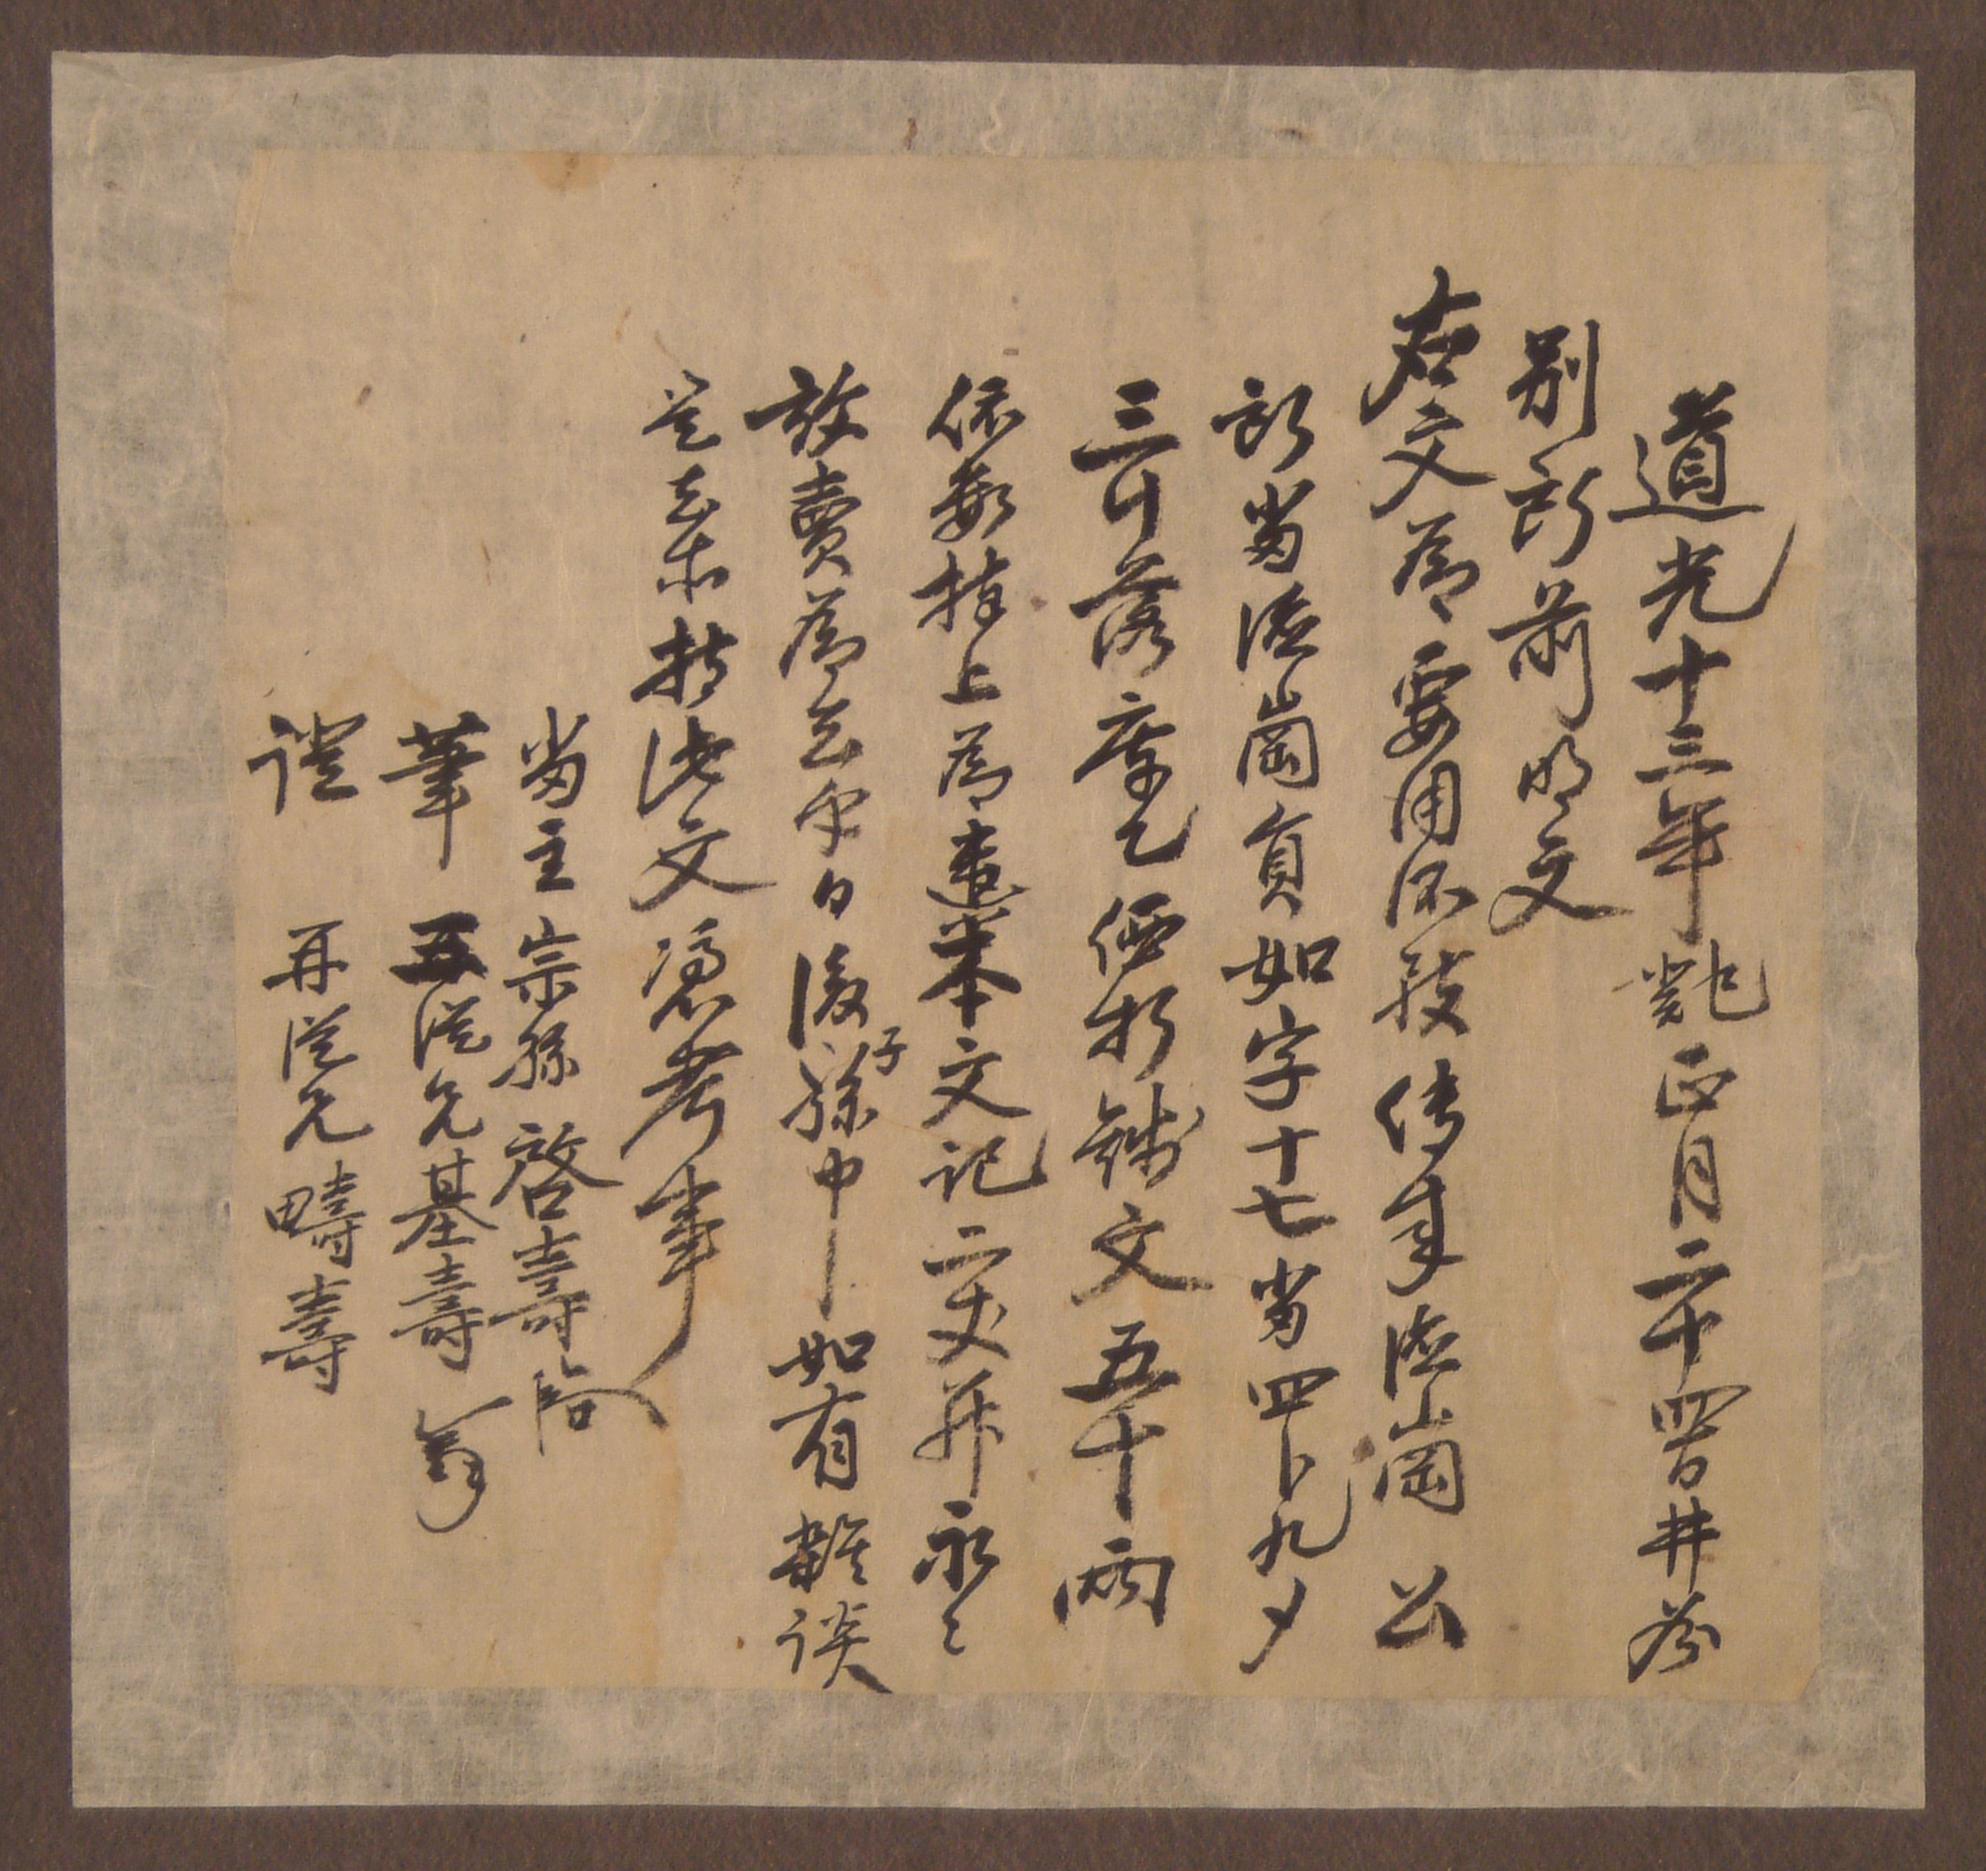 종손(宗孫) 김계수(金啓壽)가 1833년에 작성한 전답 방매문기